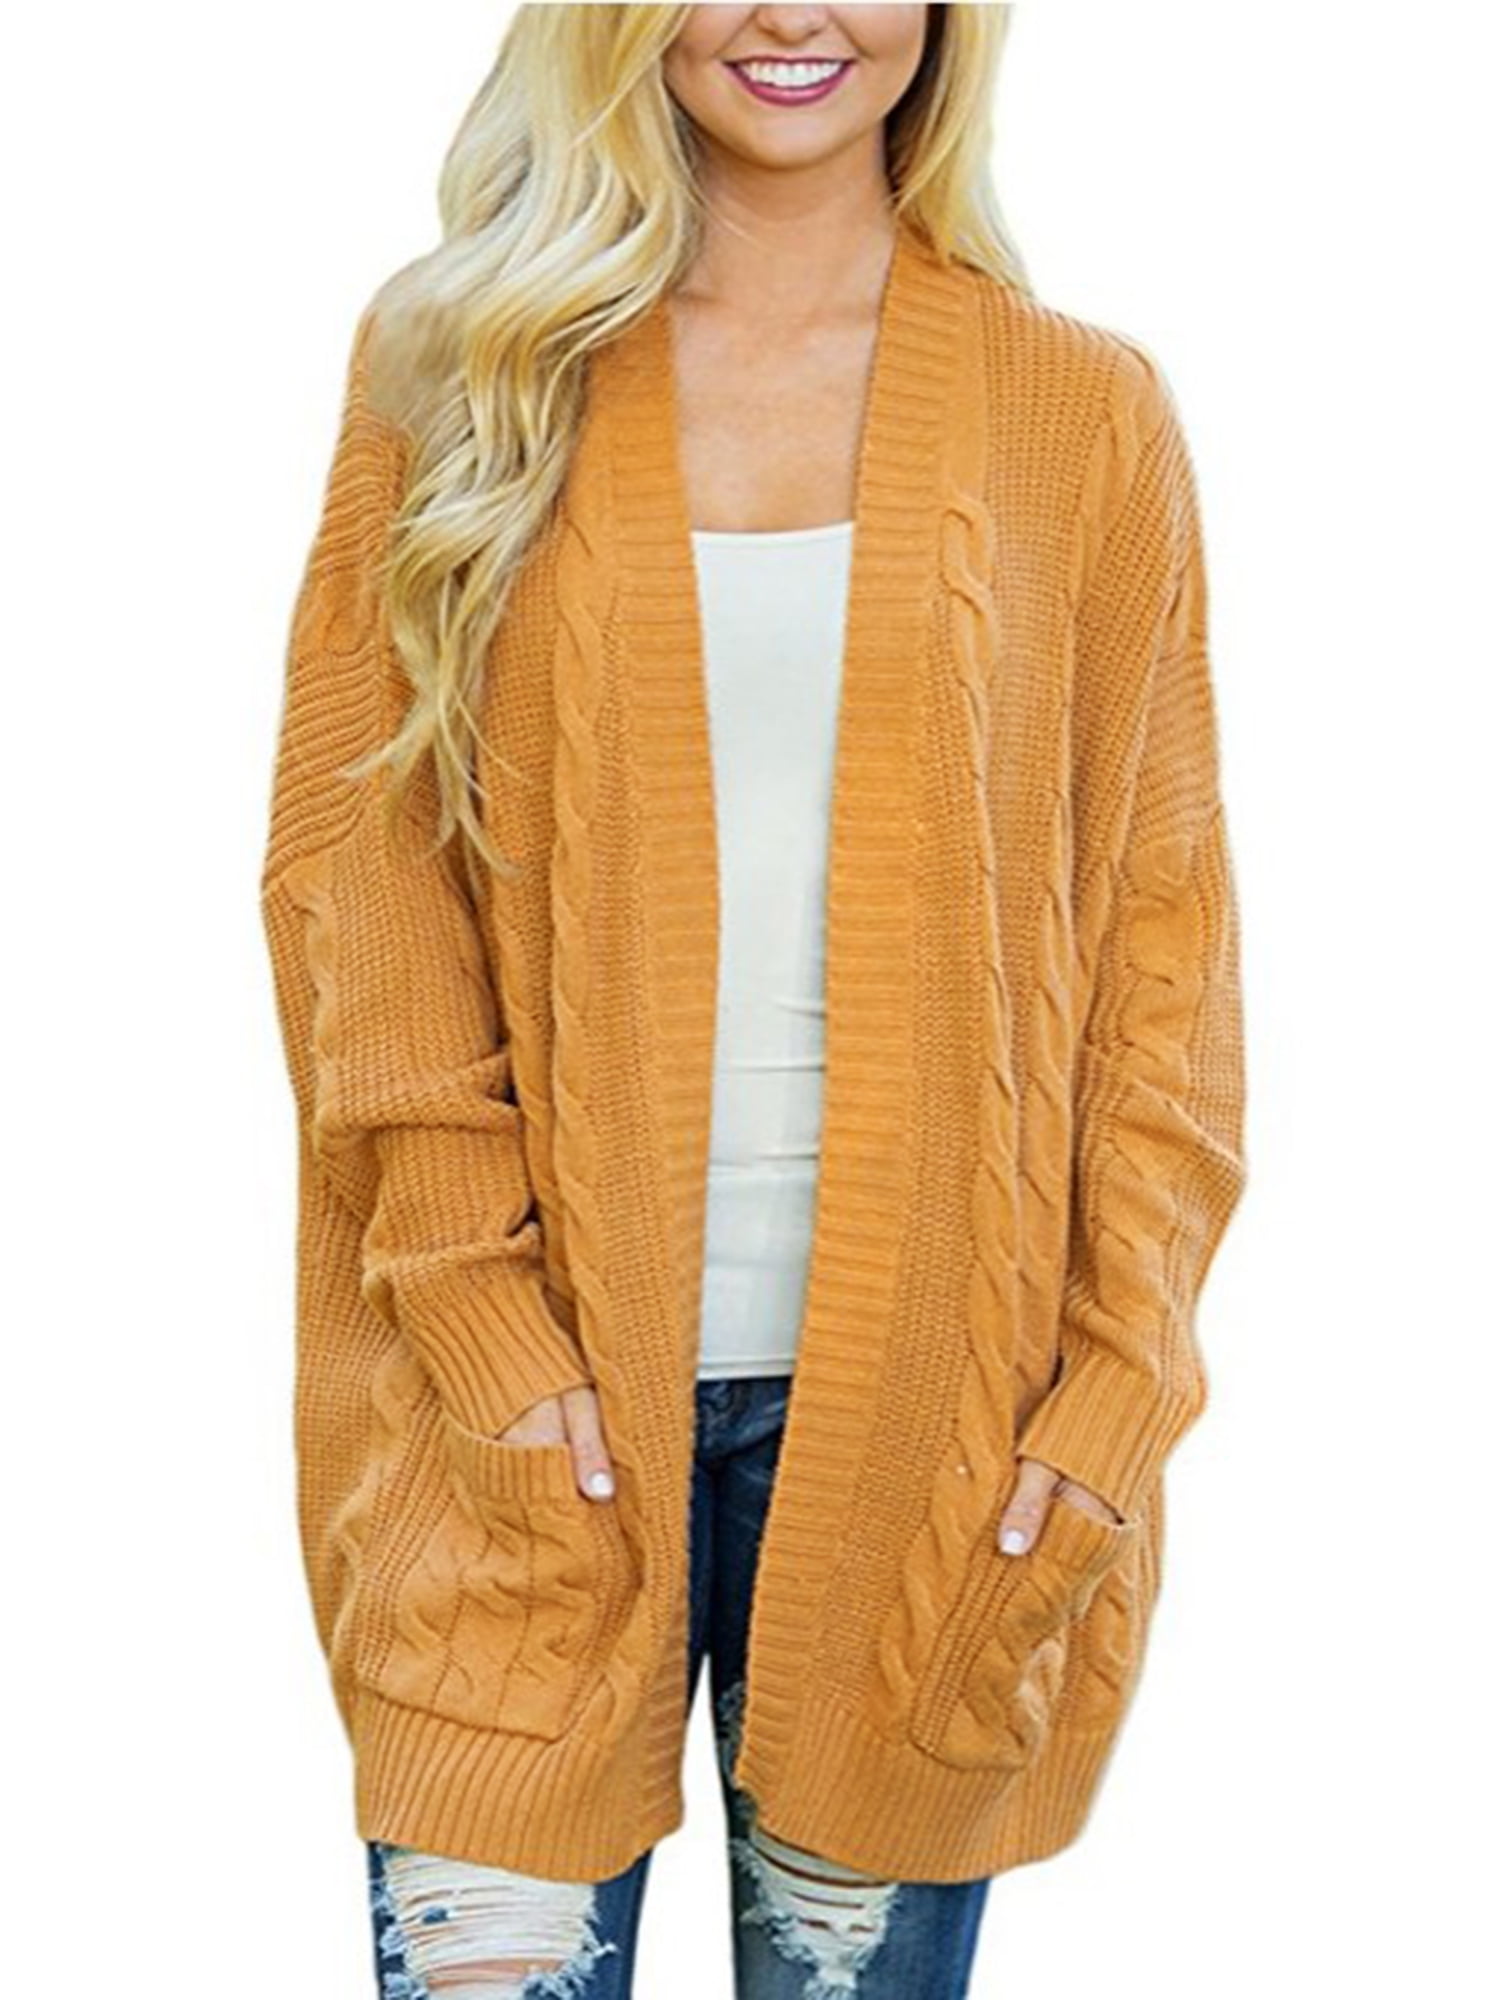 Plus Size Women Winter Cardigan Knitwear Tops Bat Sleeve Long Open  Oversized Knit Sweater Outwear Coat - Walmart.com